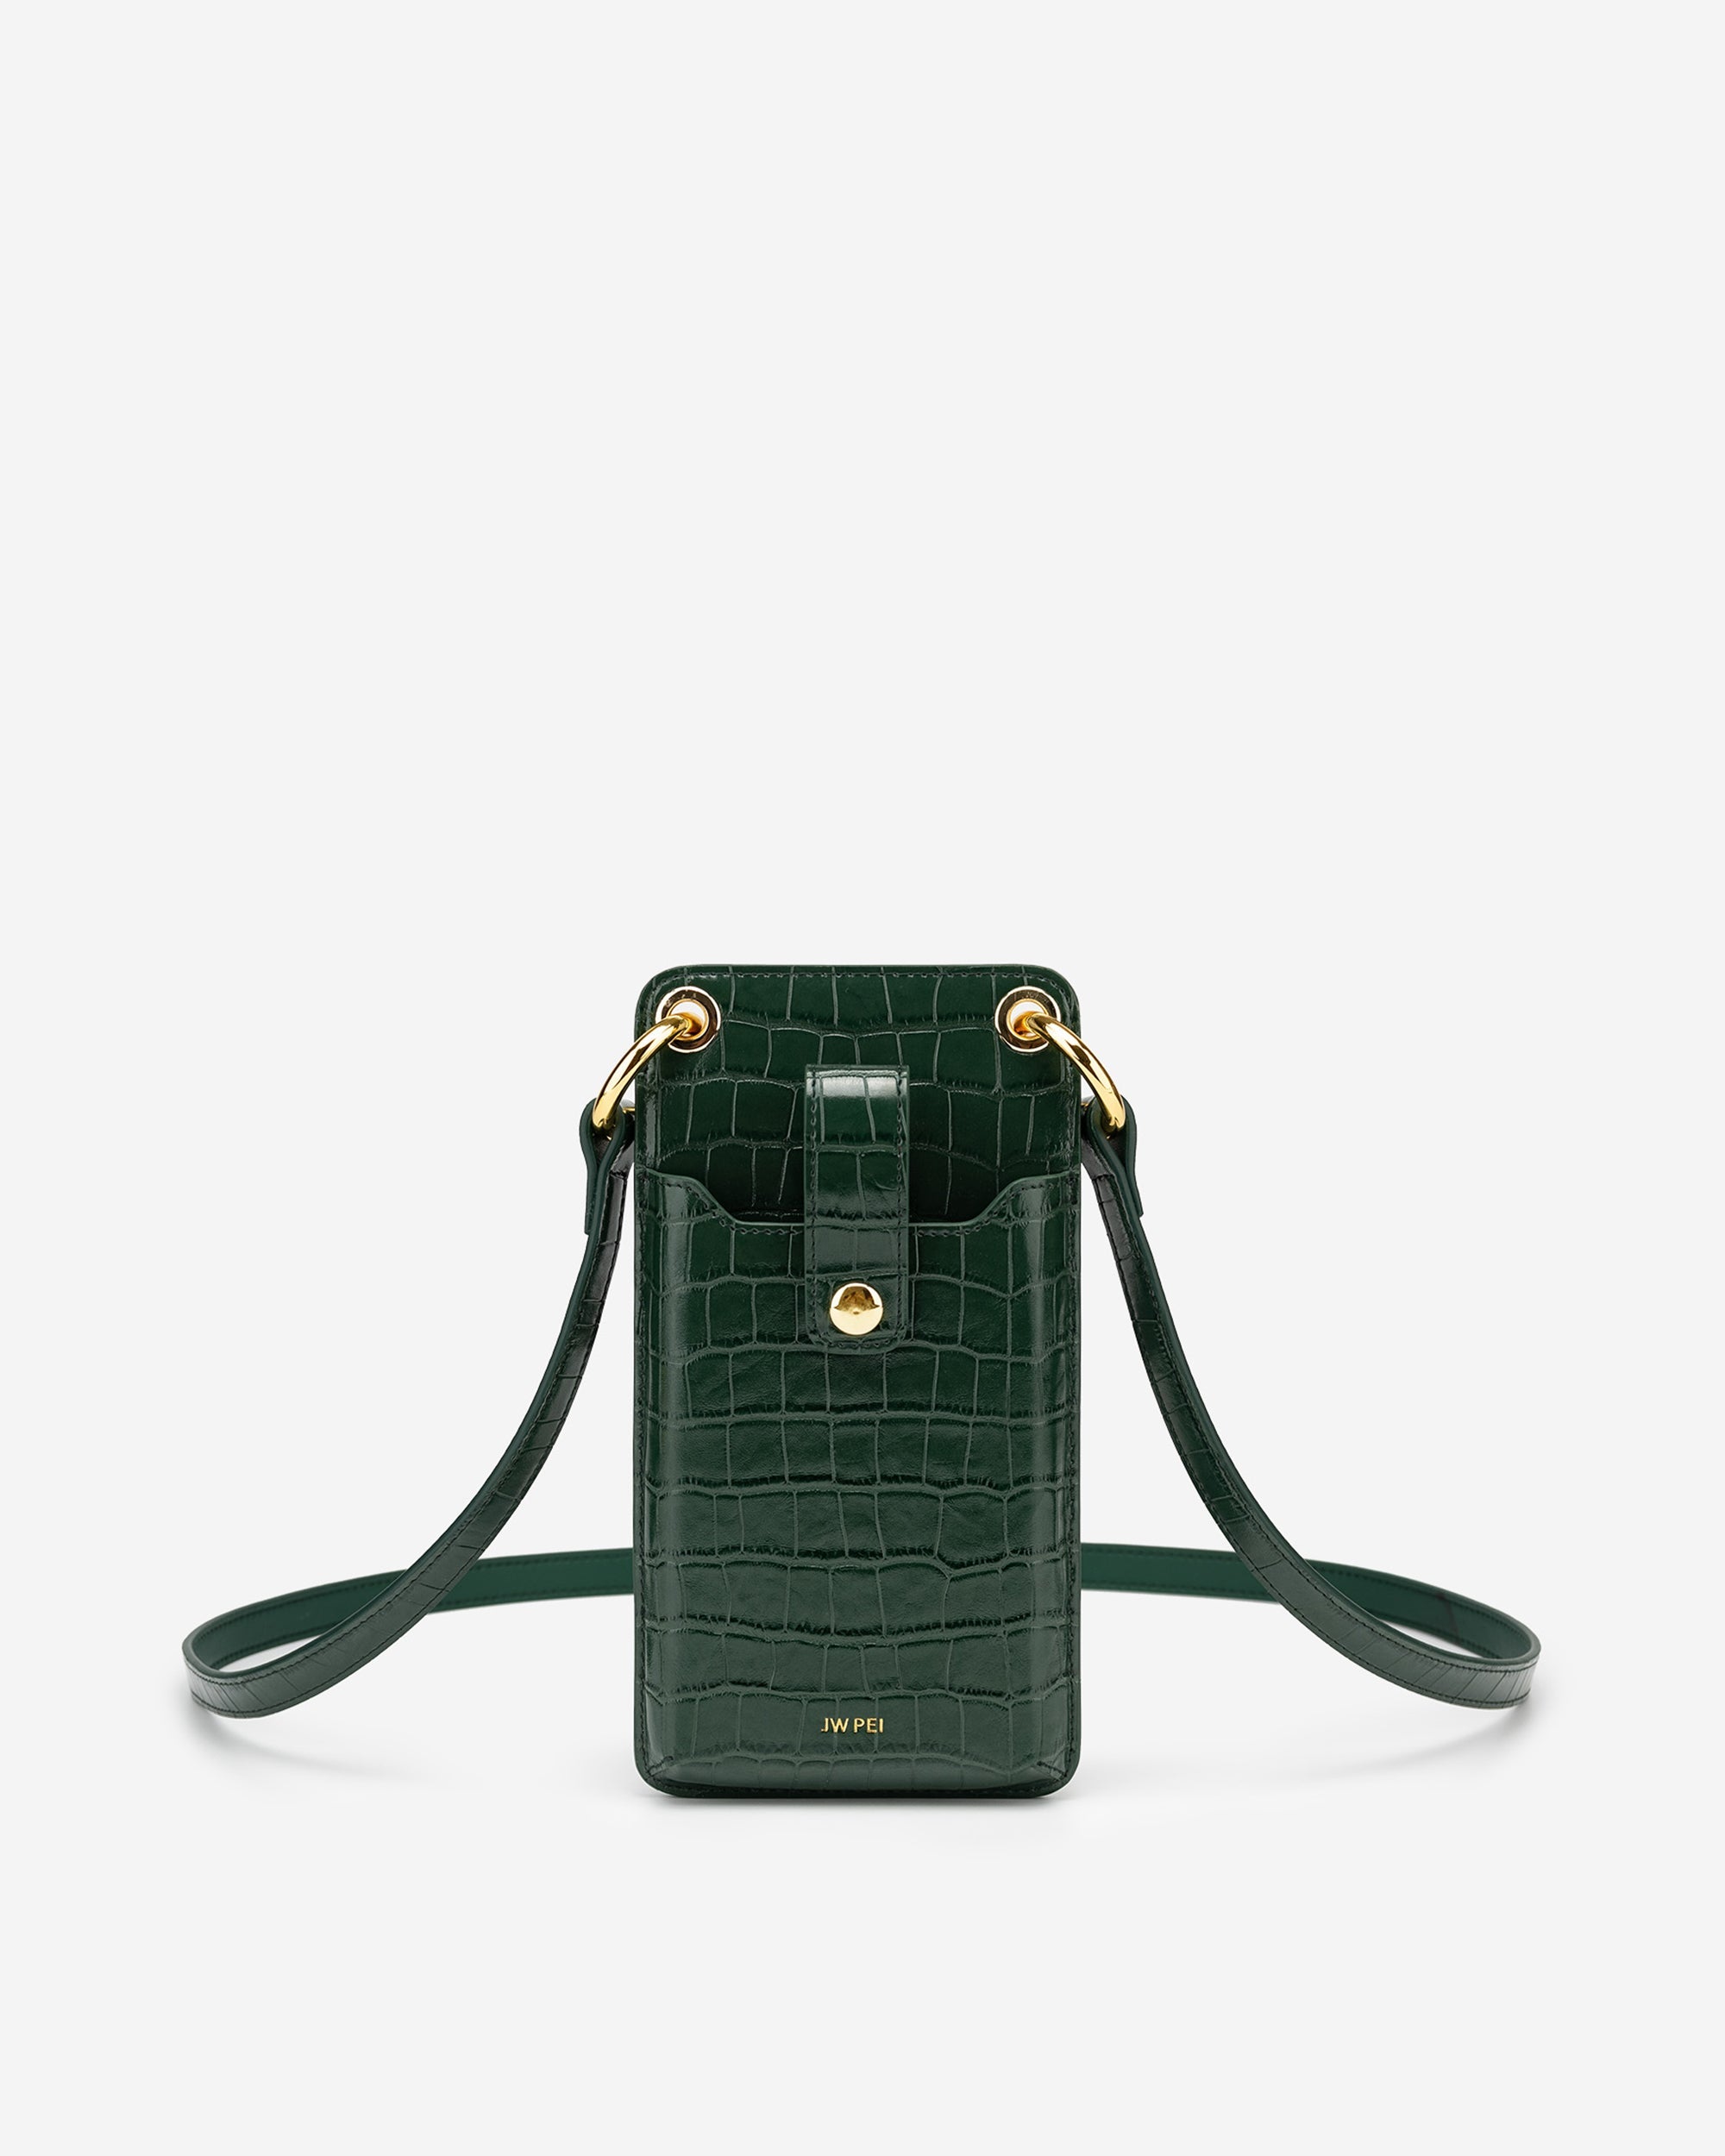 Quinn 手機包 - 墨綠色鱷魚紋